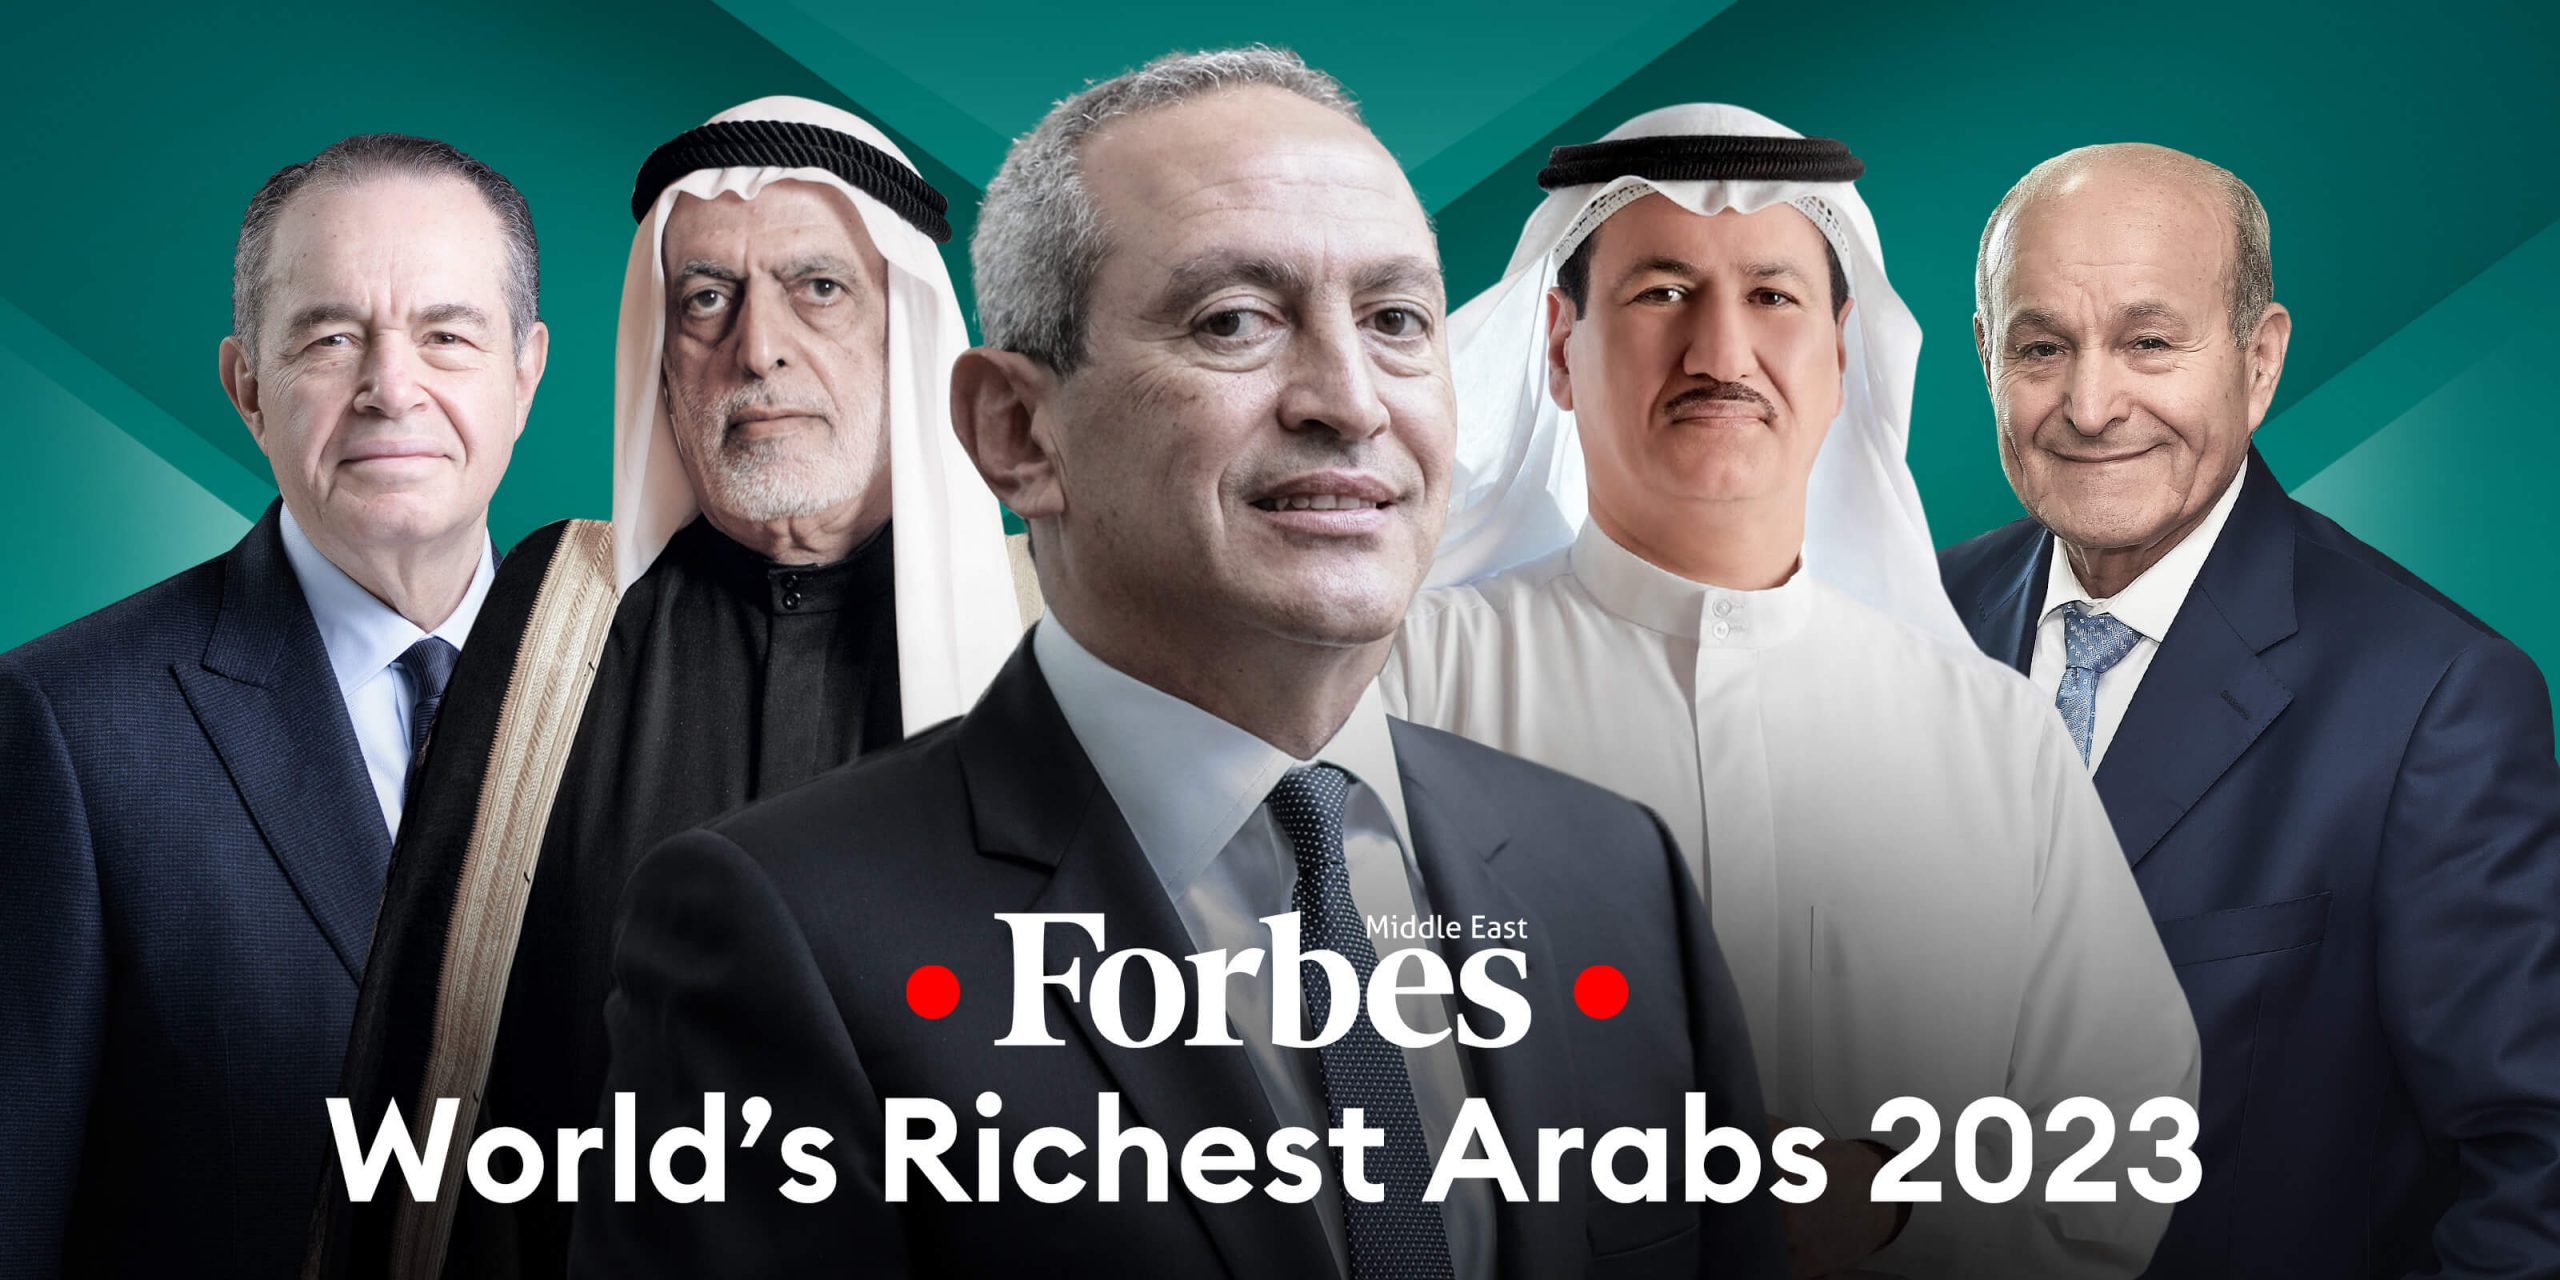 فوربس .. مليارديرات العرب 